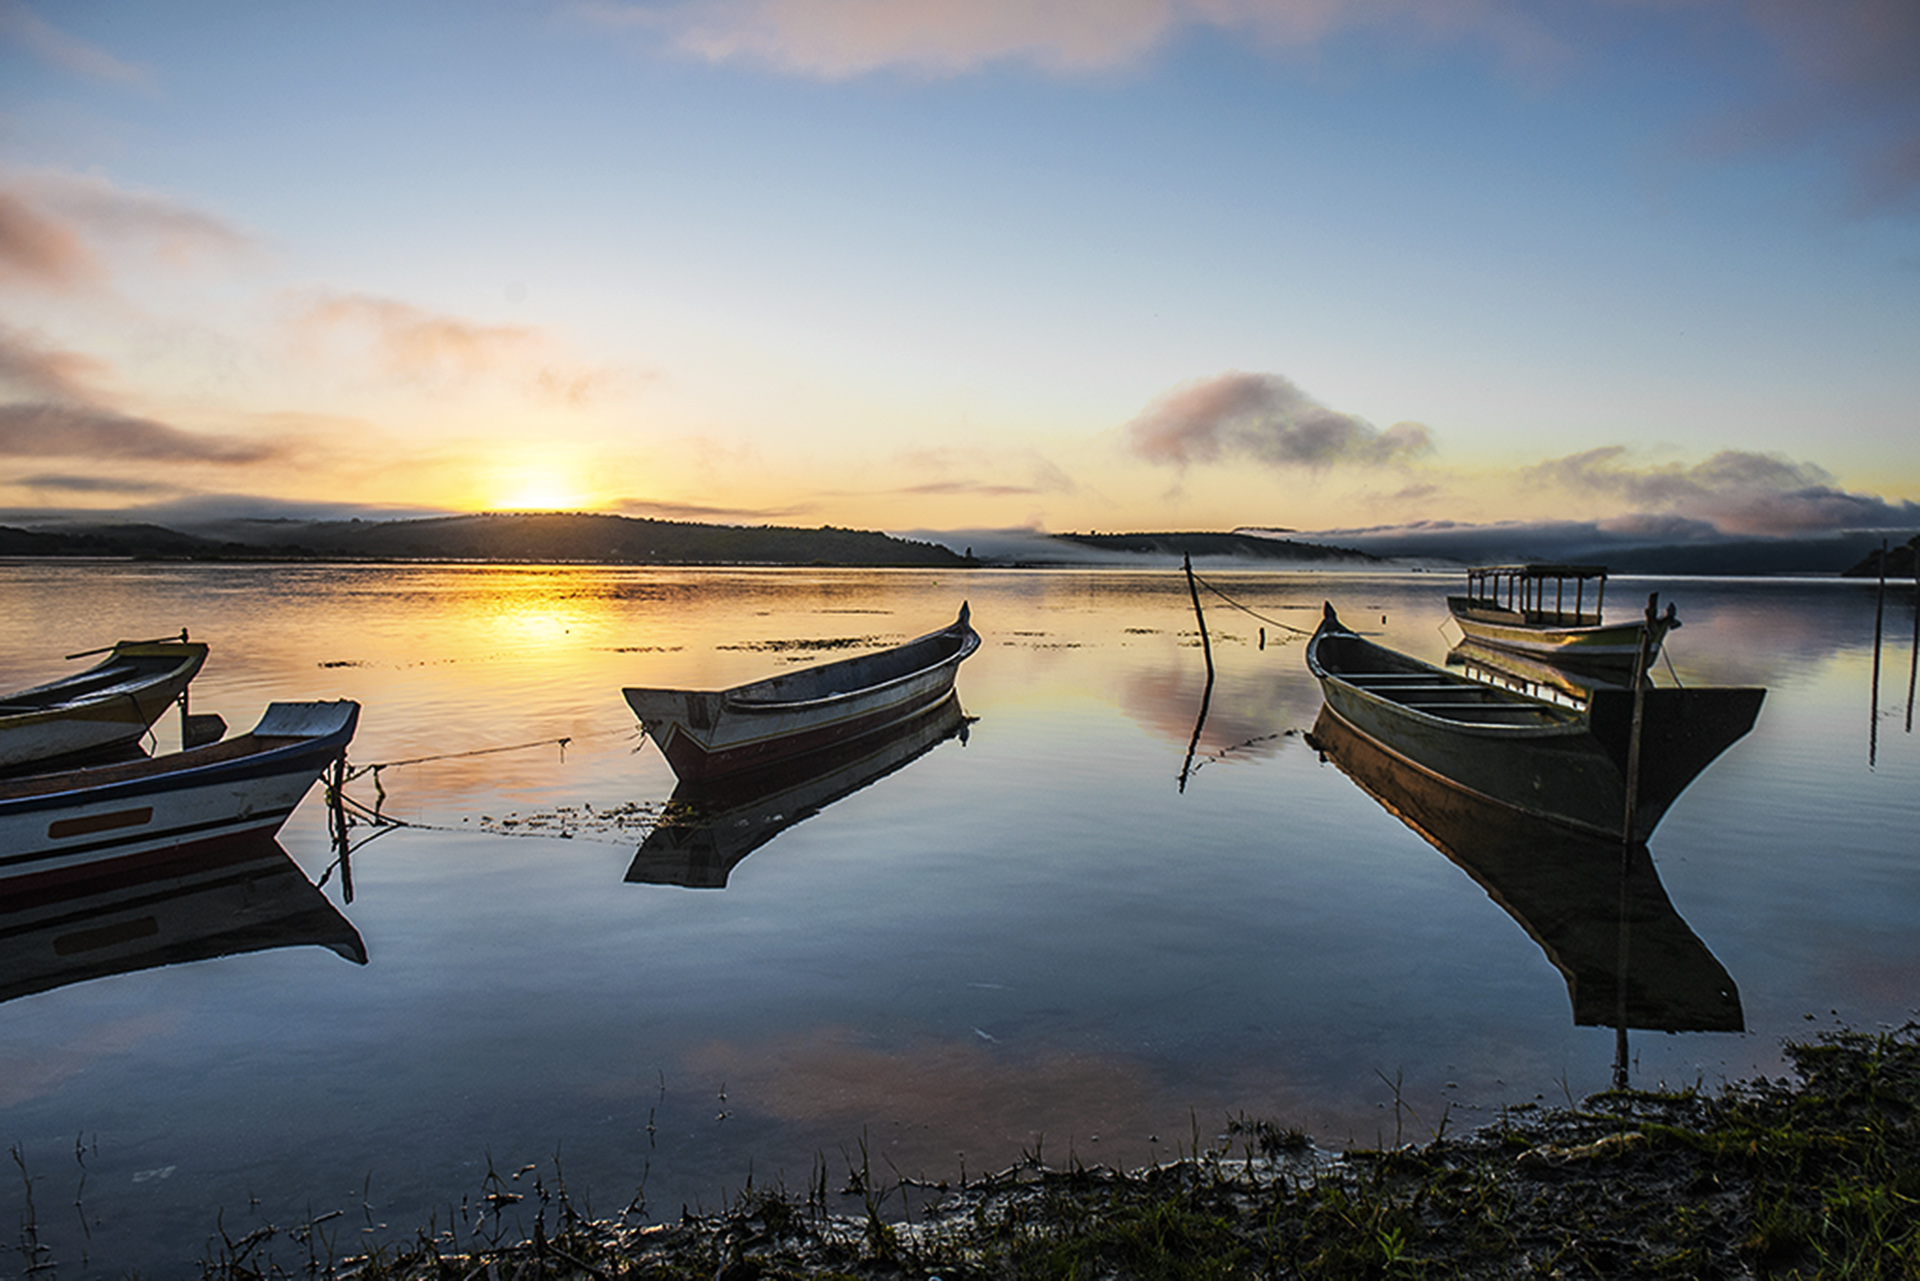 Fotografia documental, fotografia fine art, fotografia decoração, rio são Francisco, barco, amanhecer